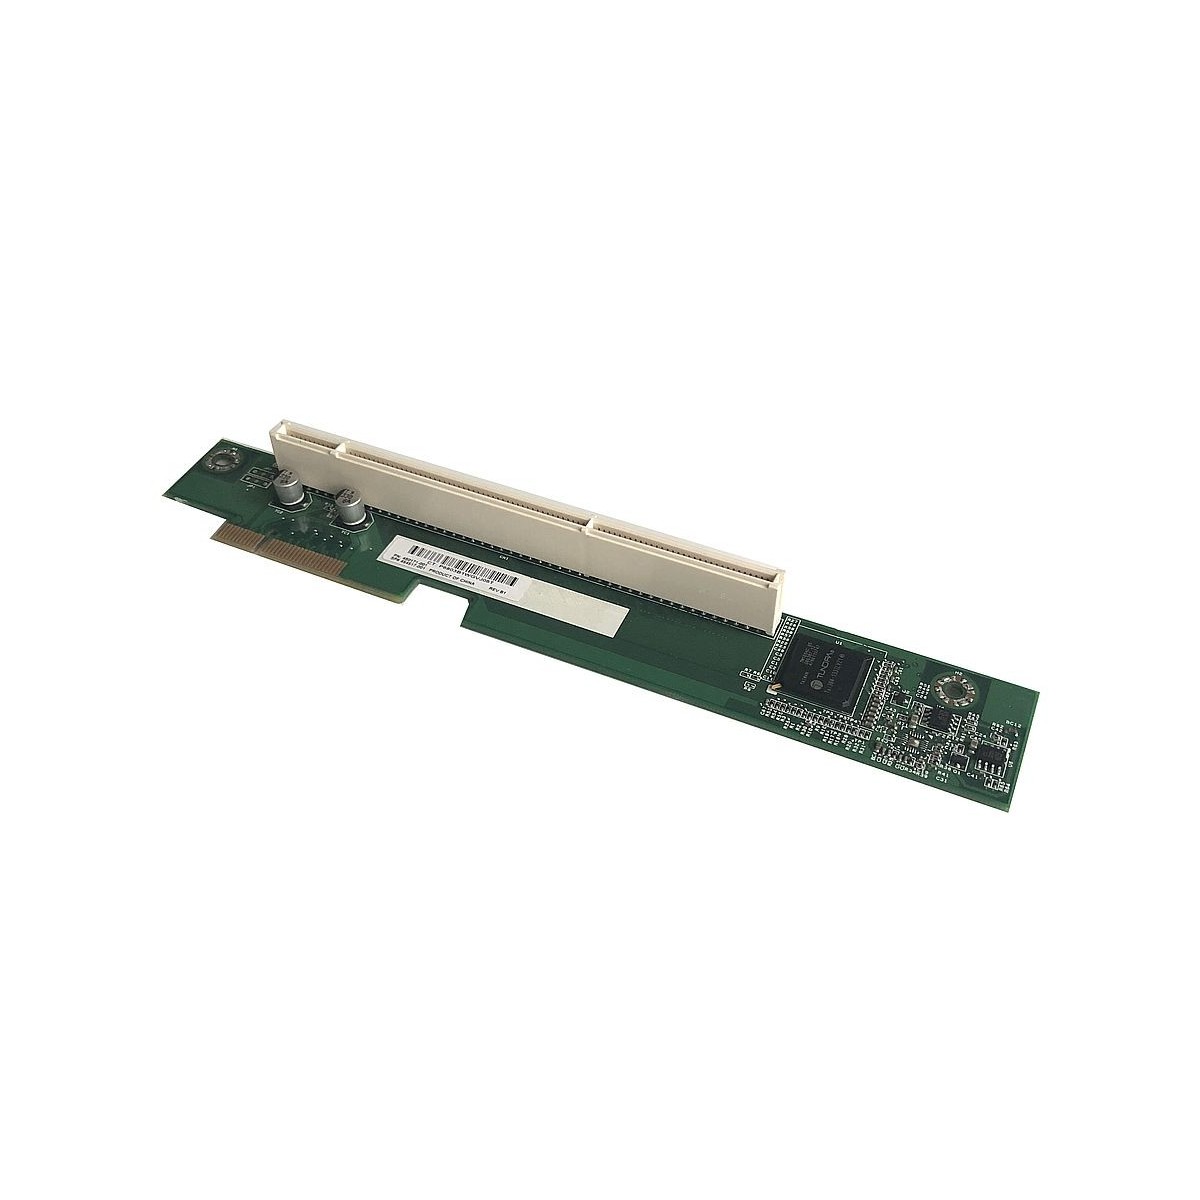 RISER CARD HP DL120 G5 DL320 G5P PCI-X 450171-001